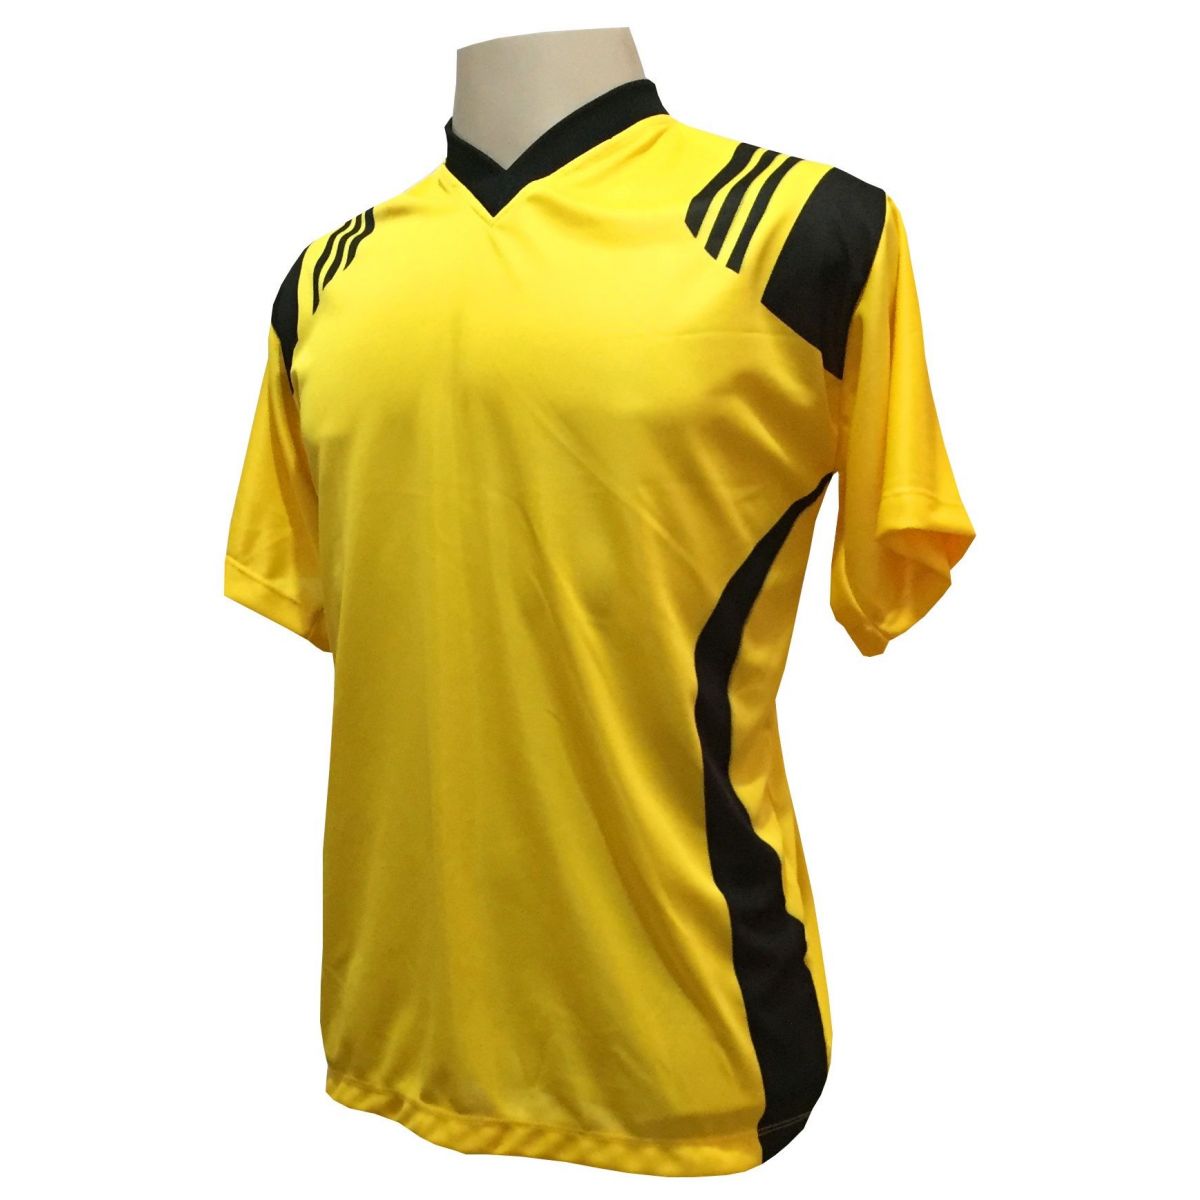 Uniforme Esportivo com 12 camisas modelo Roma Amarelo/Preto + 12 calções modelo Copa Preto/Amarelo + Brindes